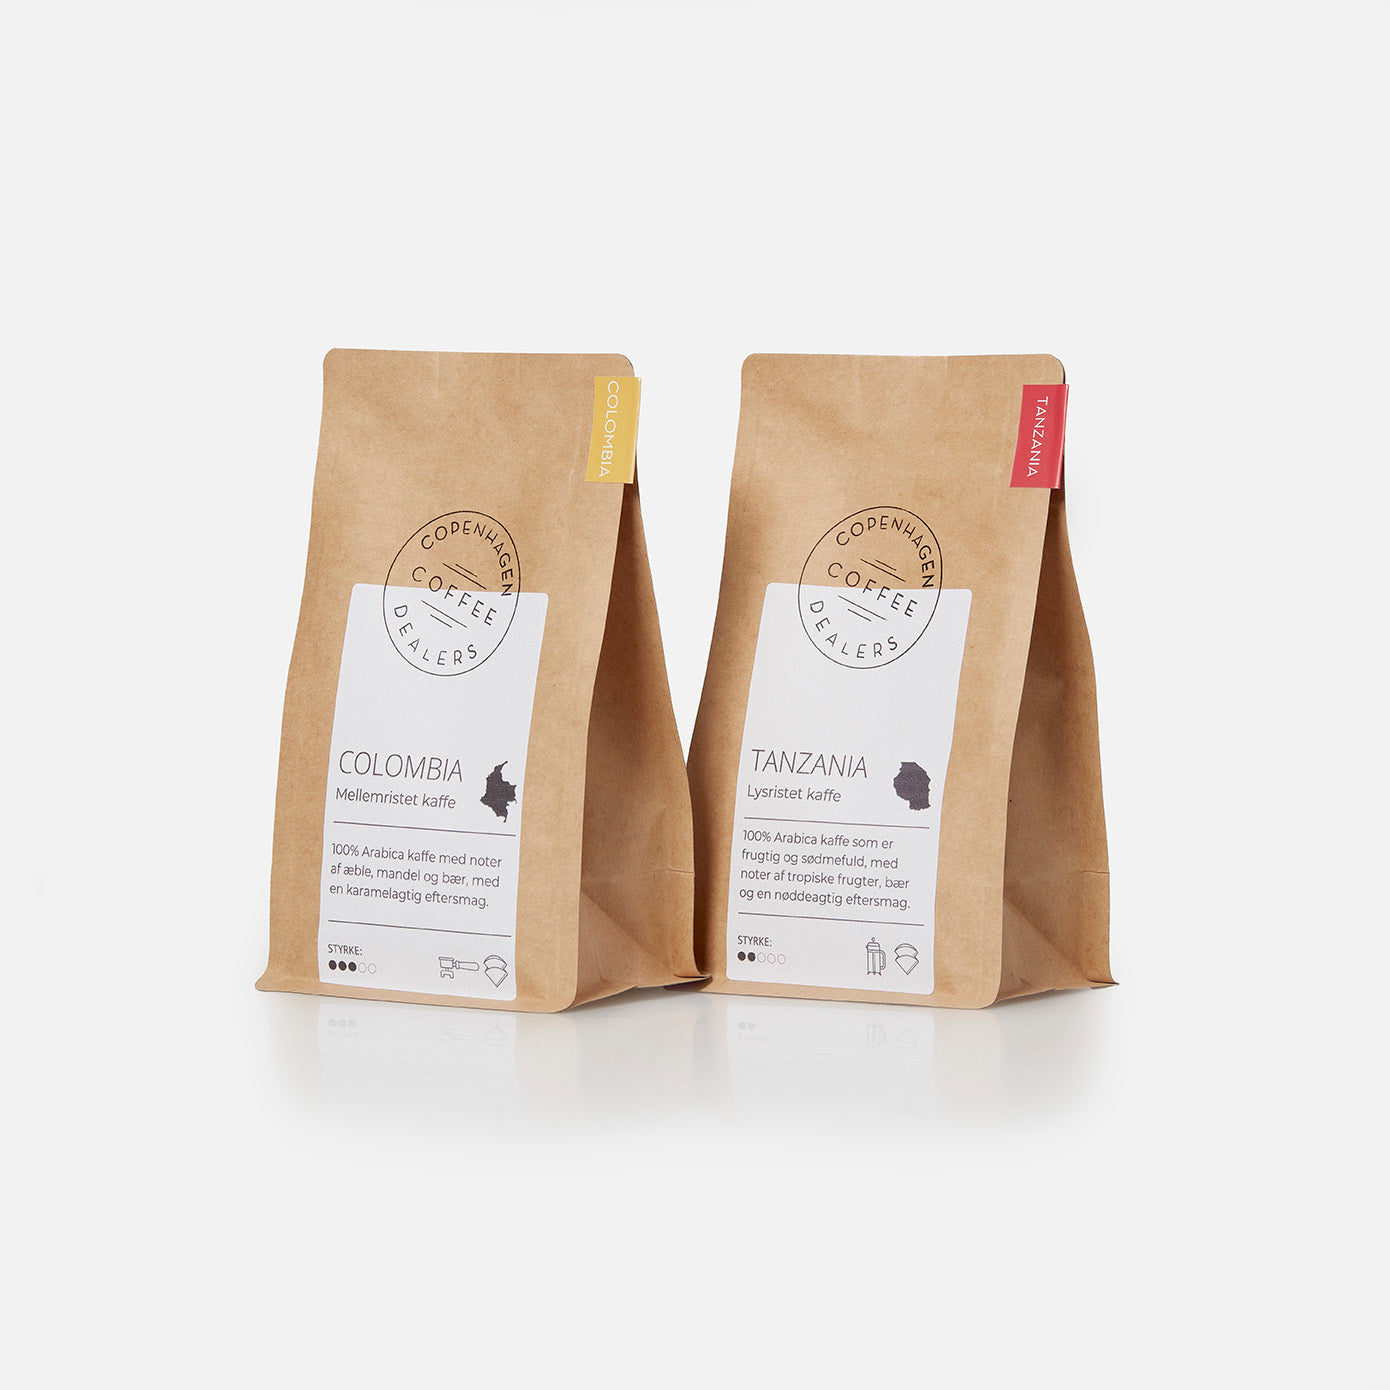 Oplev vores særlige stempelkaffe smagspakke med 2x250g fra Colombia og Tanzania, perfekt til at udforske forskellige smagsprofiler